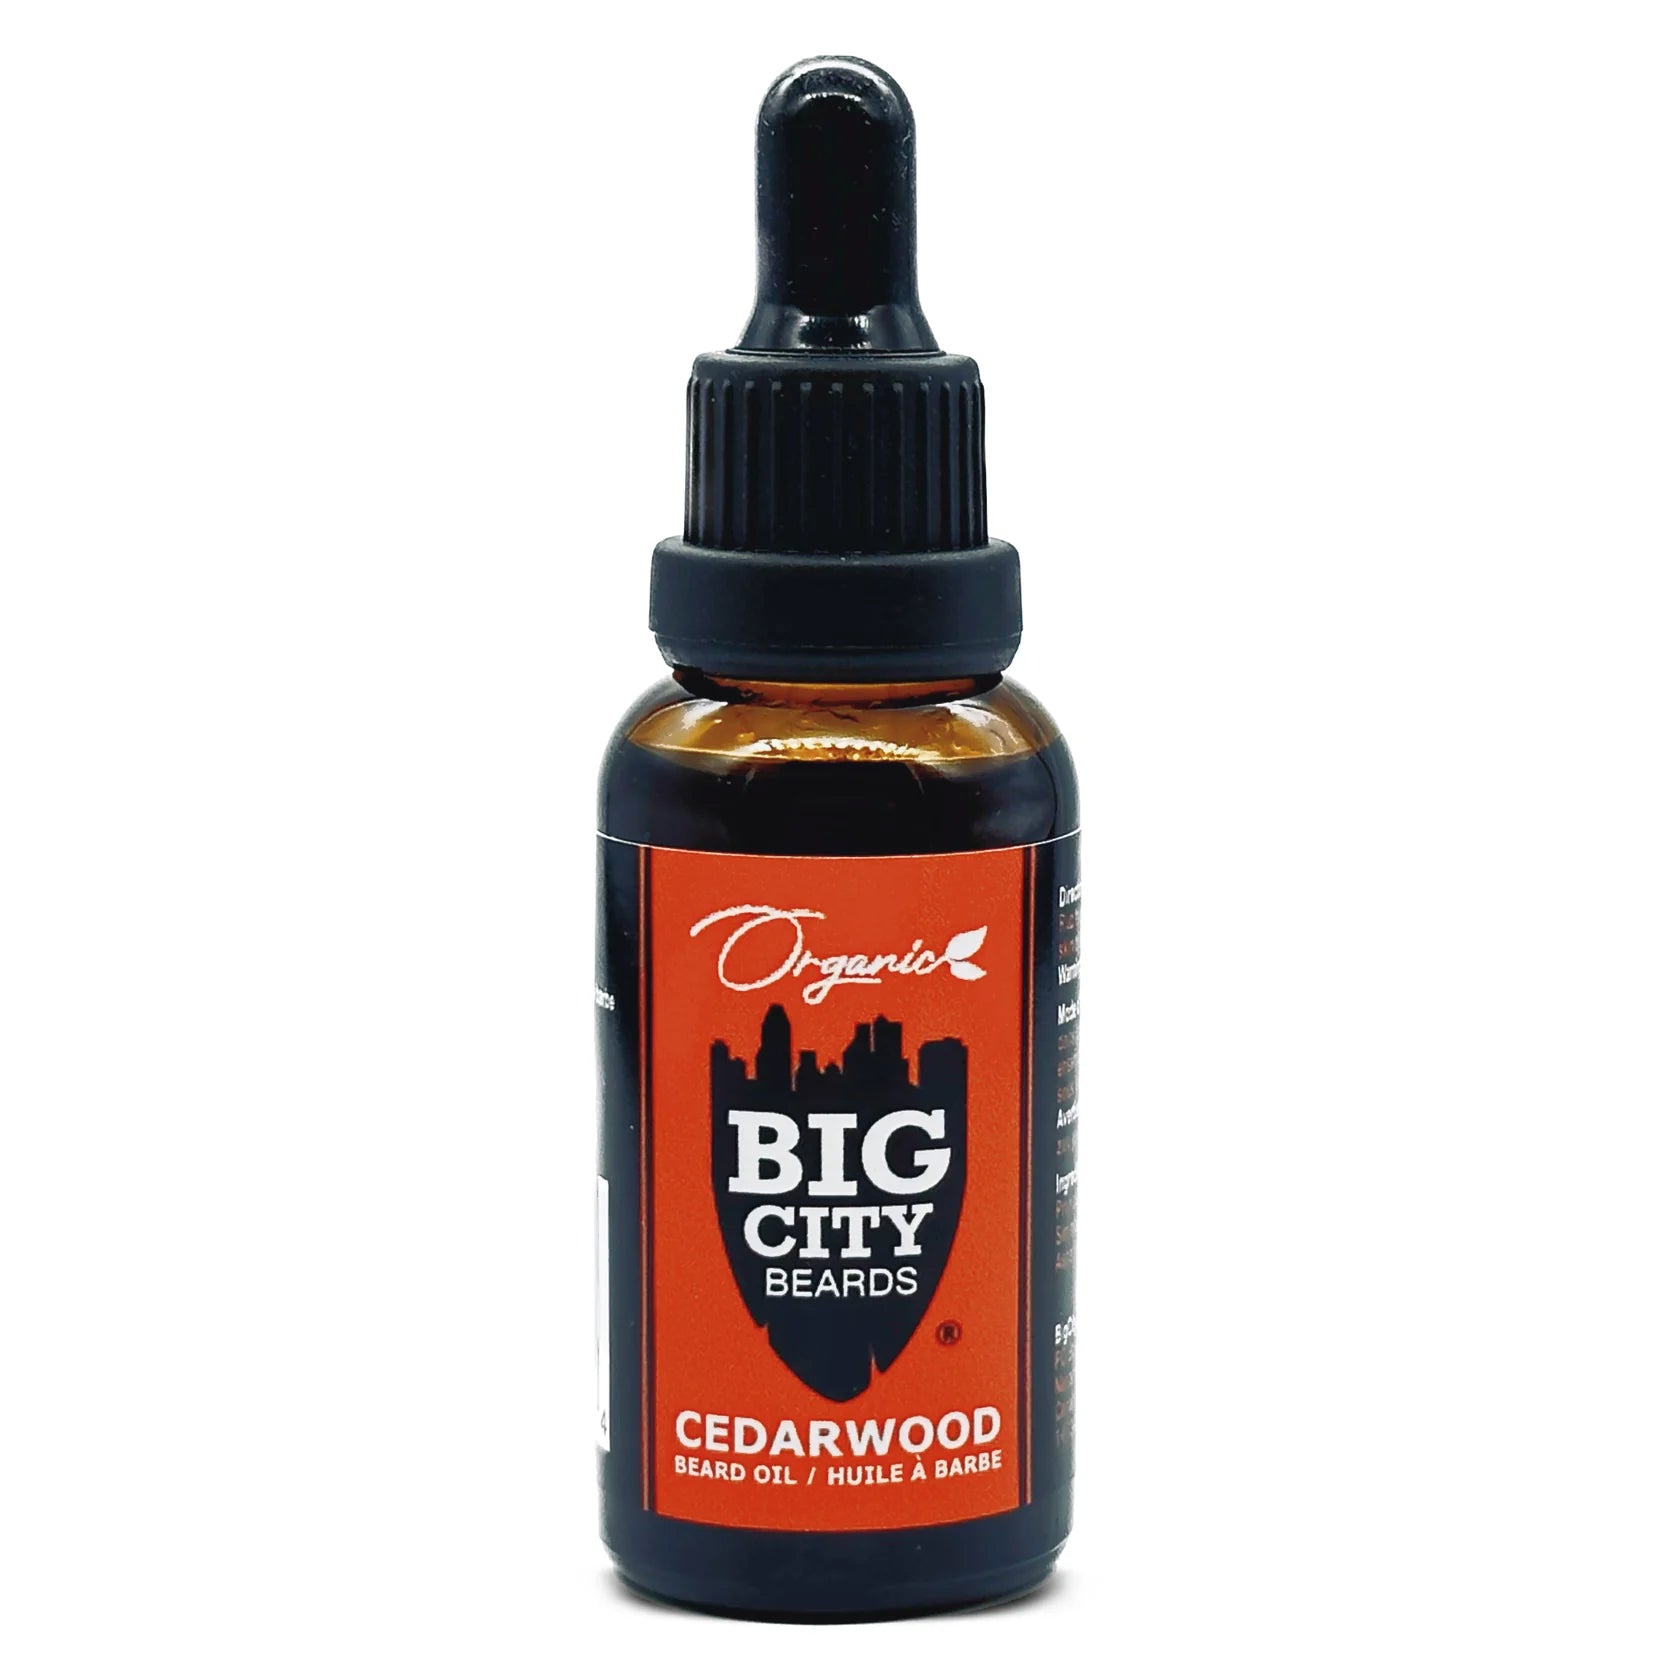 Big City Beards Organic Beard Oils Cedar Wood